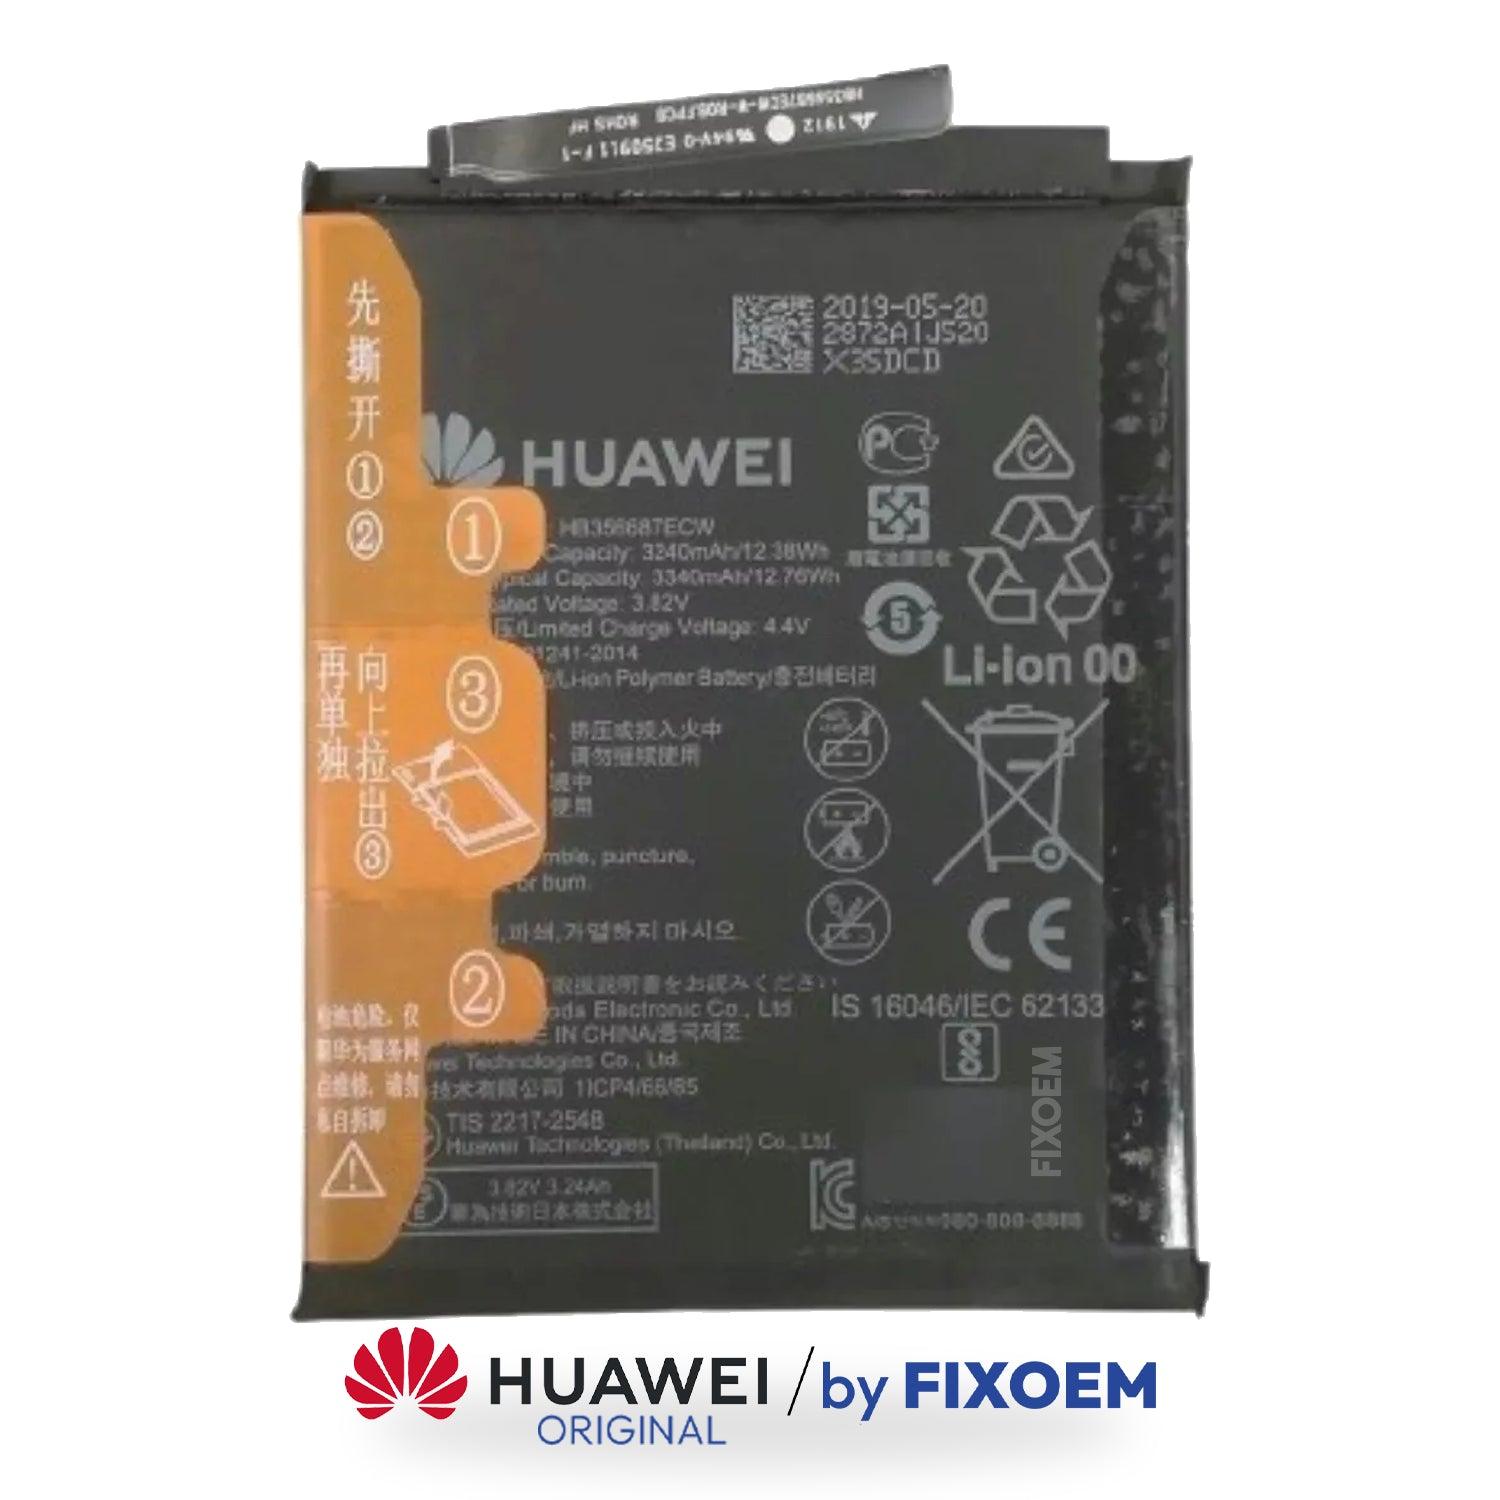 Bateria Huawei Mate 10 Lite Rne-L01/ P10 Selfie Bac L03 / P30 Lite Mar-Lx3A Hb356687Ecw |+2,000 reseñas 4.8/5 ⭐